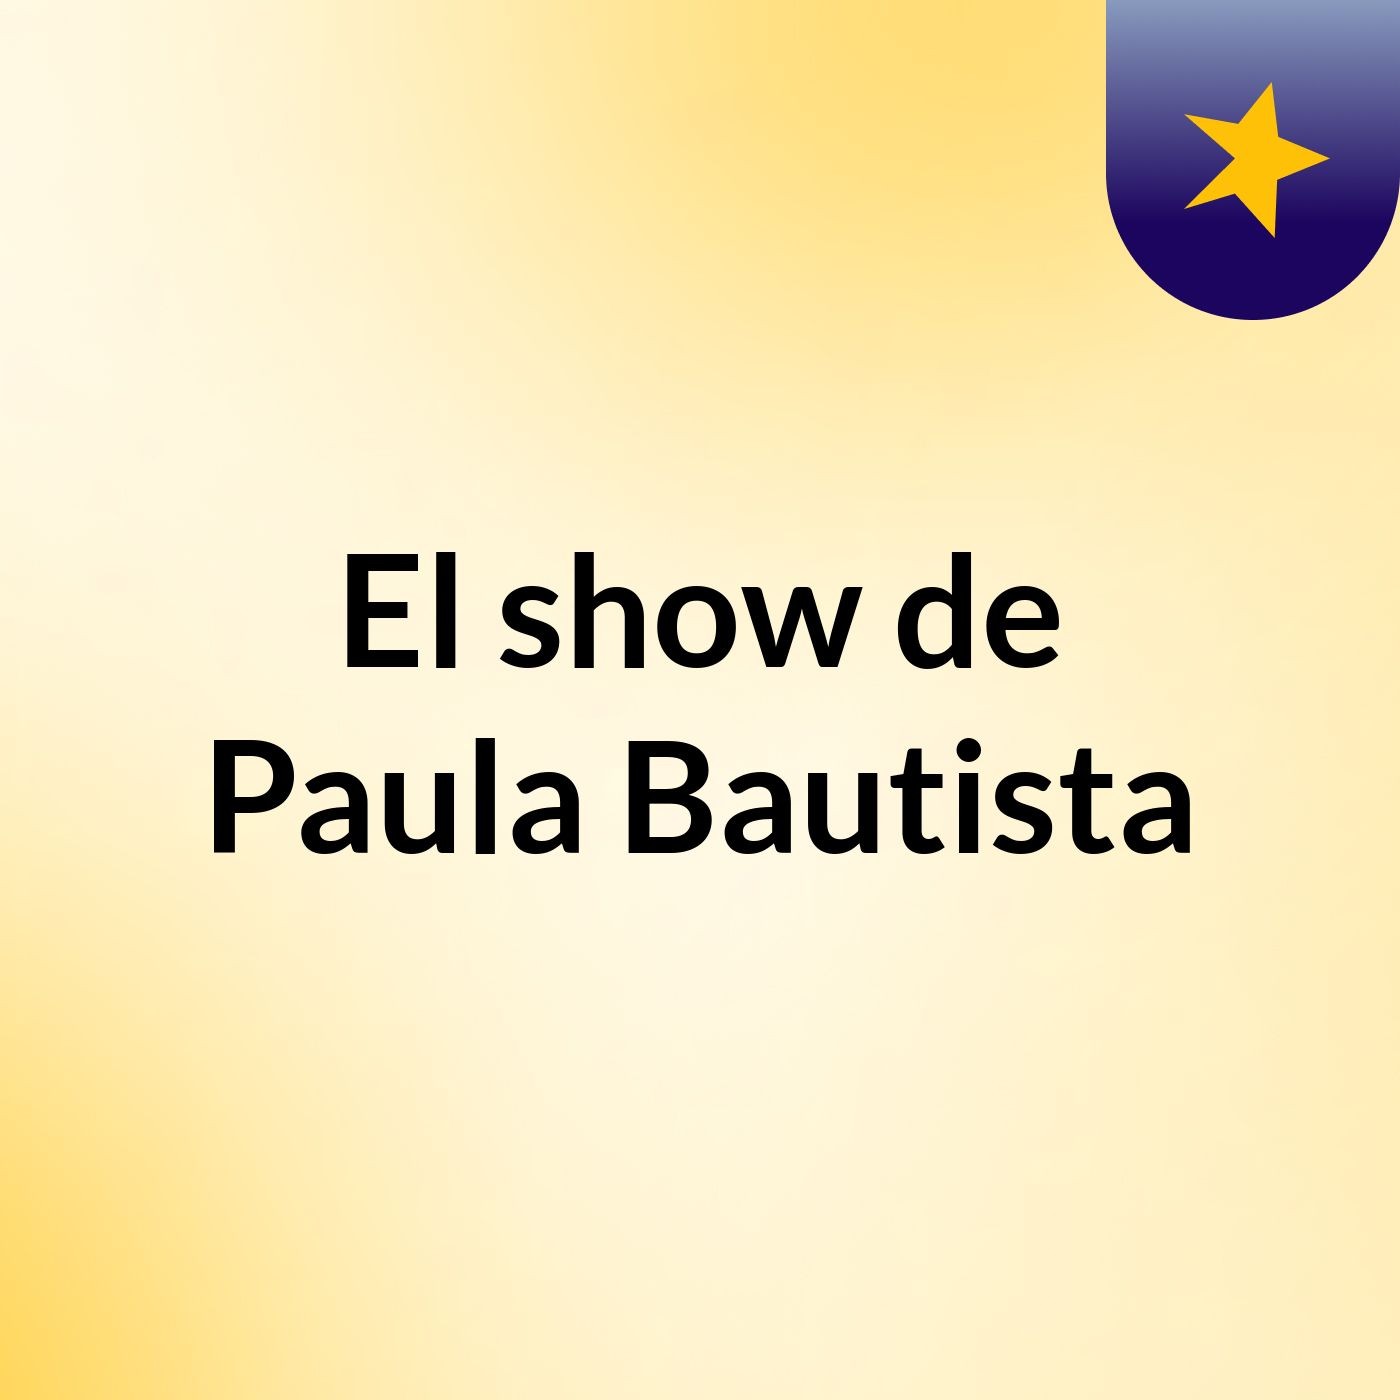 El show de Paula Bautista